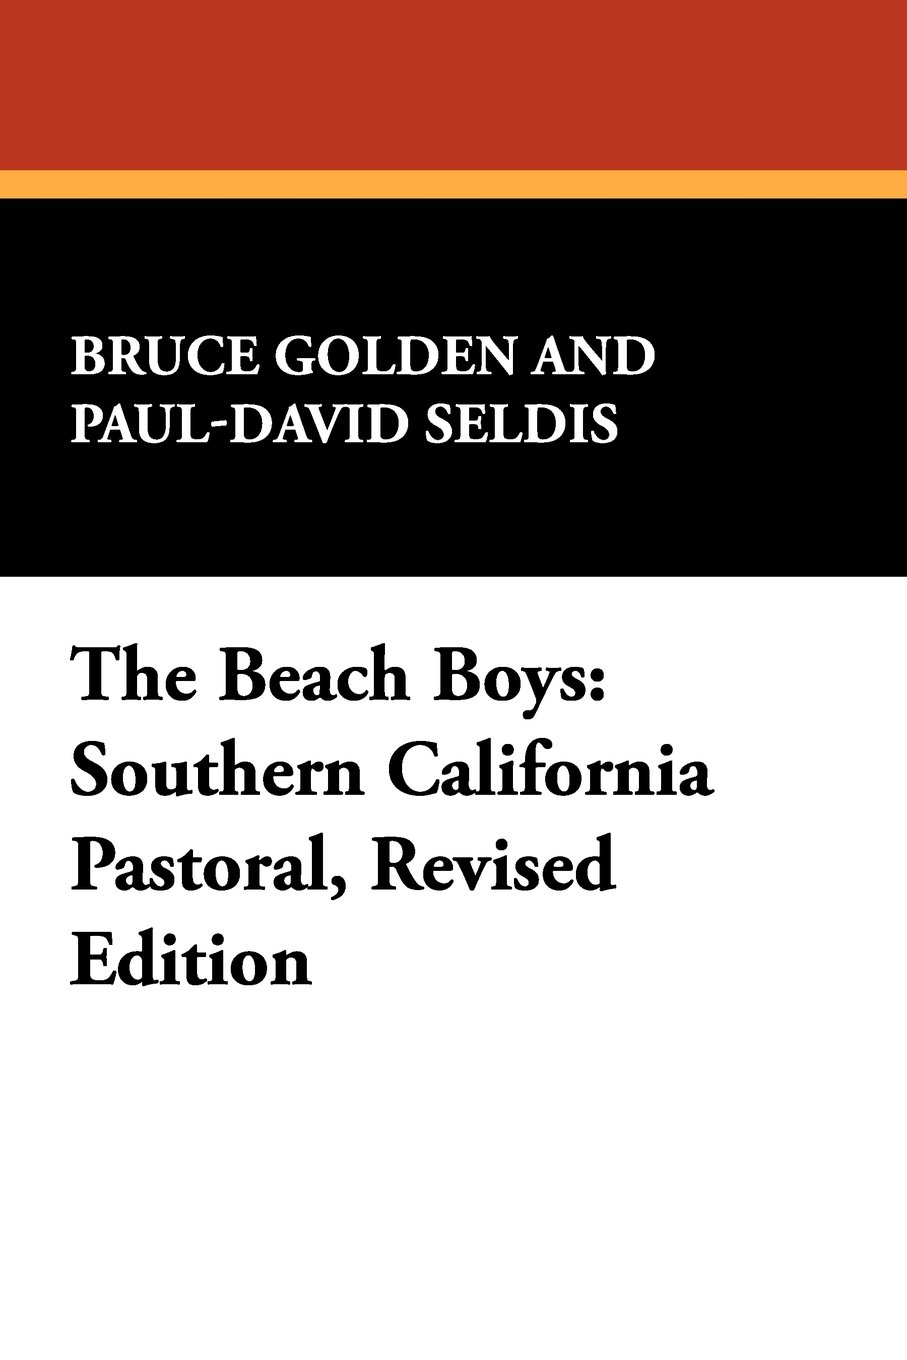 The Beach Boys cover